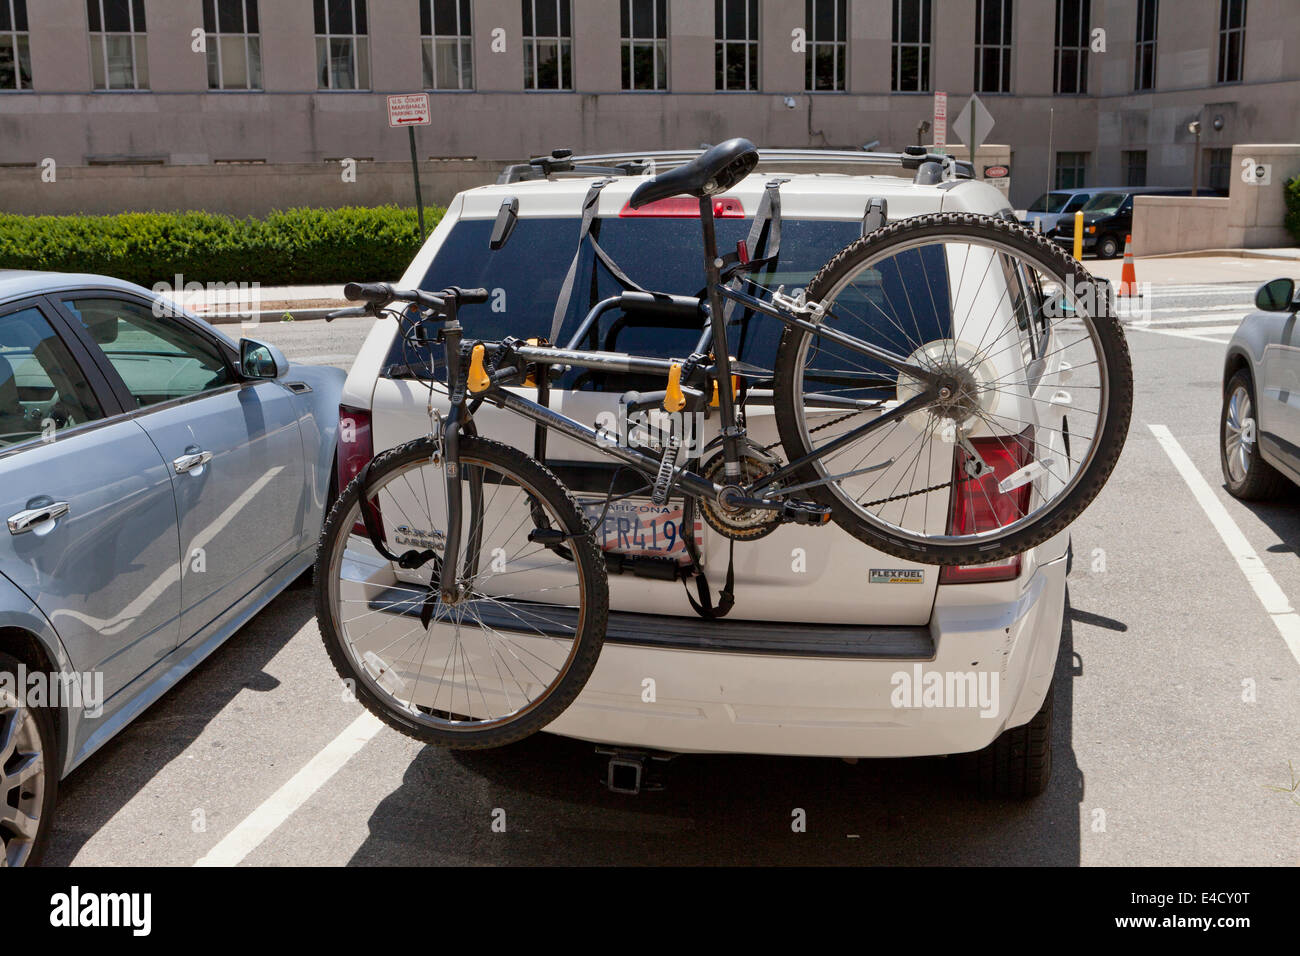 Soporte para bicicletas en el coche Imágenes vectoriales de stock - Alamy